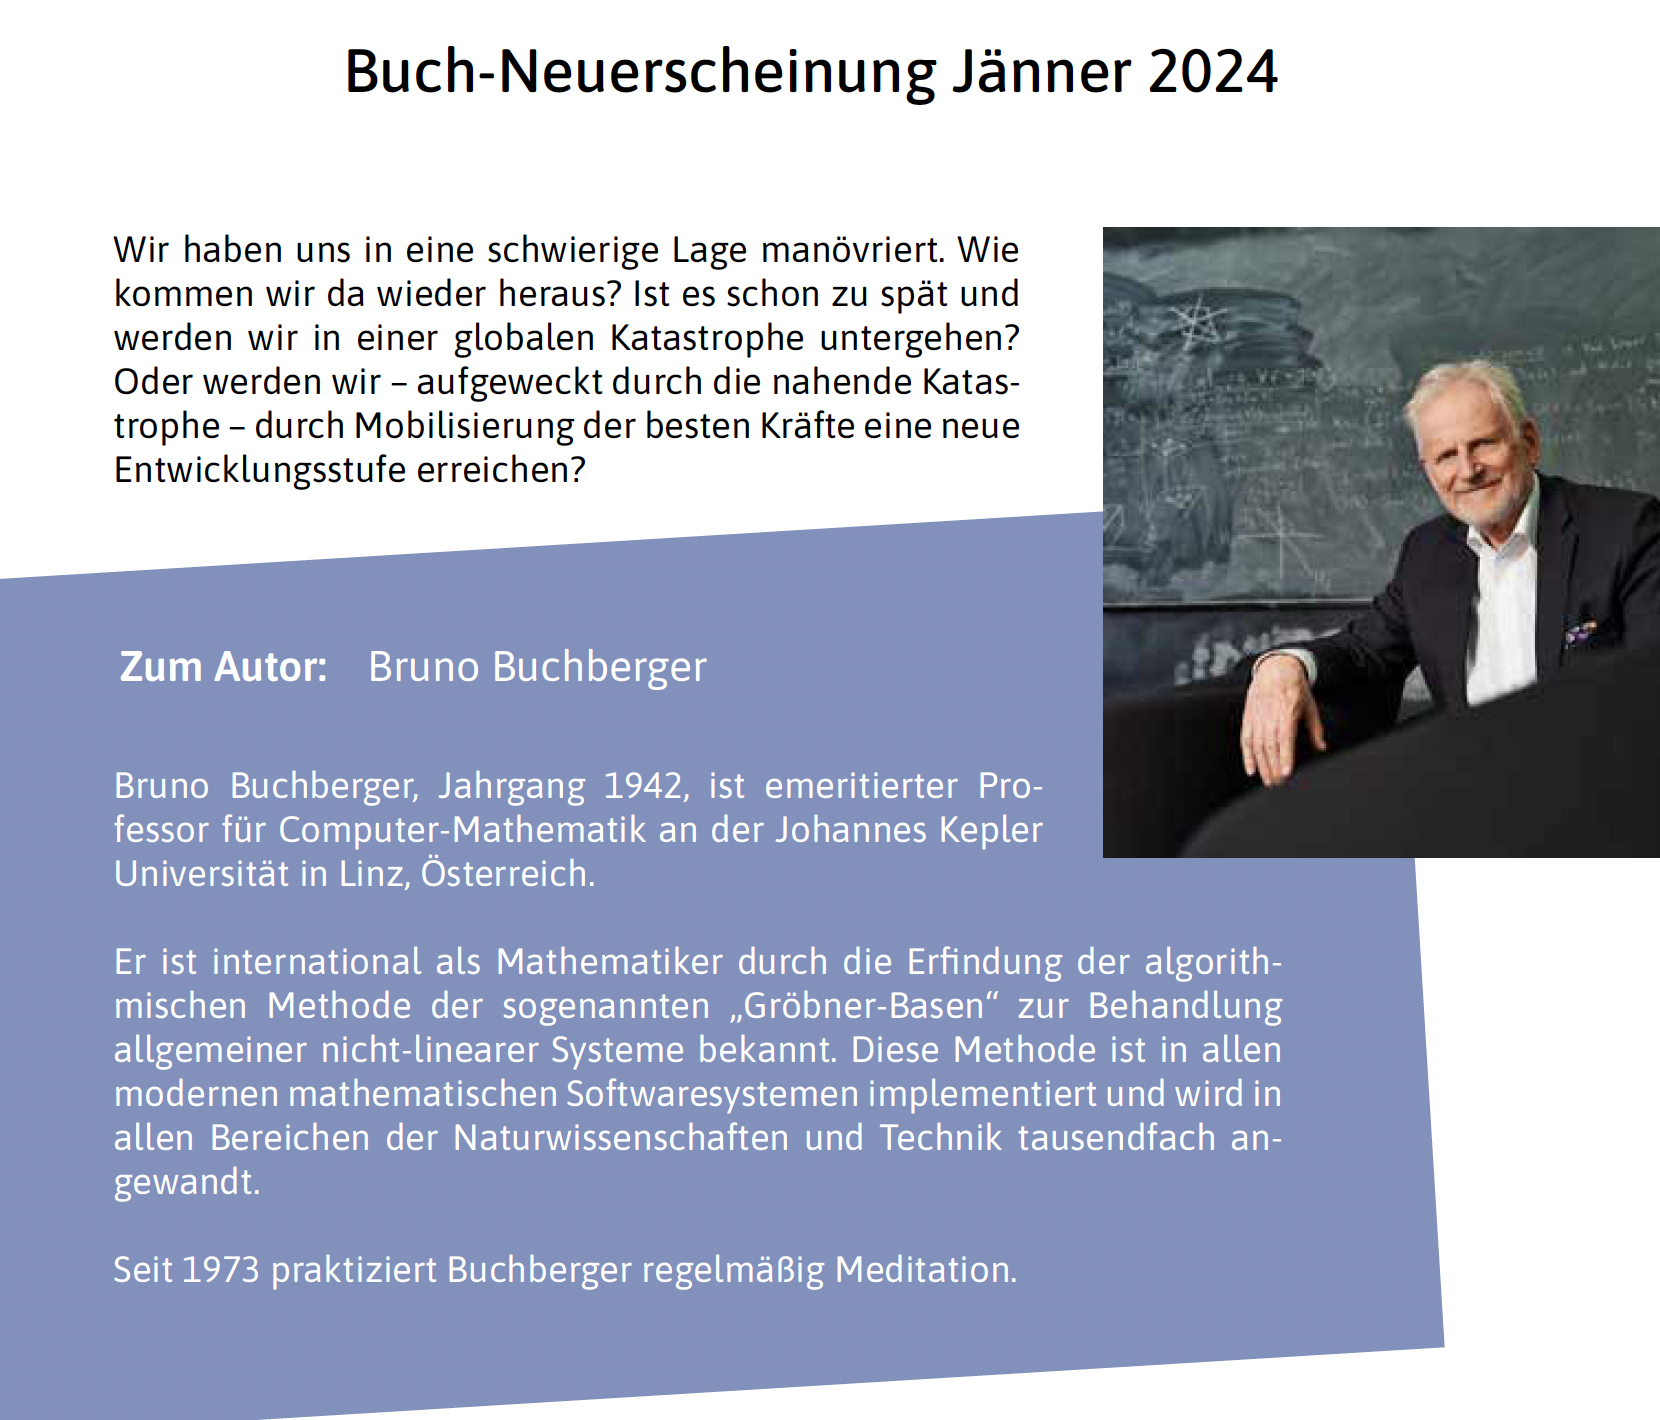 NEU Jänner 2024: Wissenschaft + Meditation